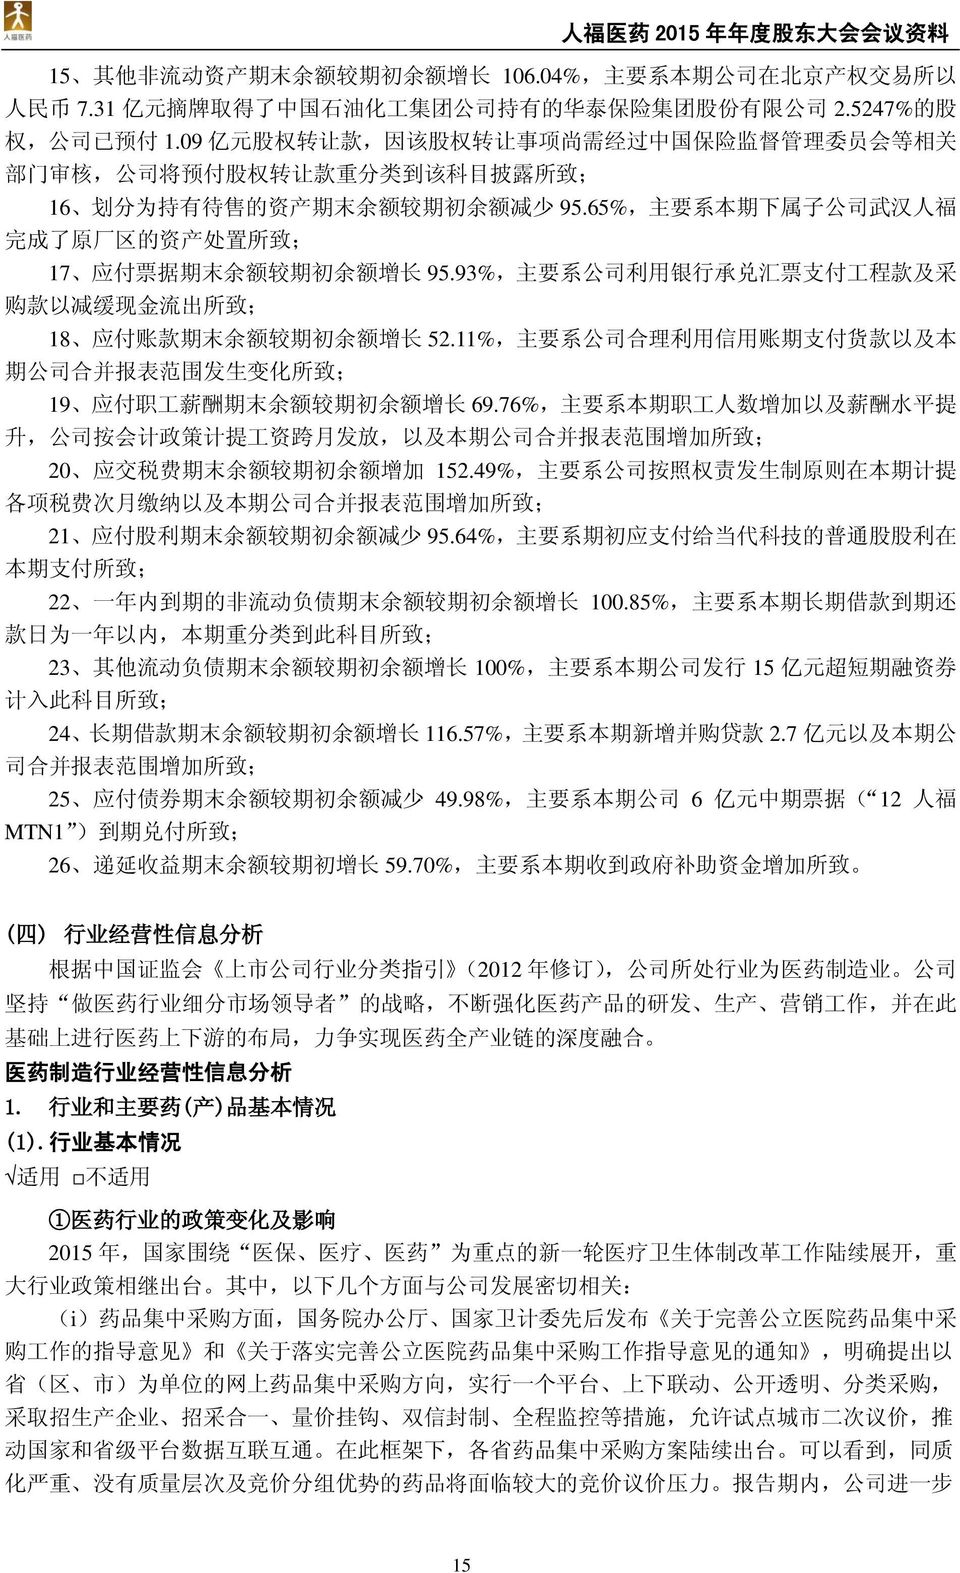 65%, 主 要 系 本 期 下 属 子 公 司 武 汉 人 福 完 成 了 原 厂 区 的 资 产 处 置 所 致 ; 17 应 付 票 据 期 末 余 额 较 期 初 余 额 增 长 95.